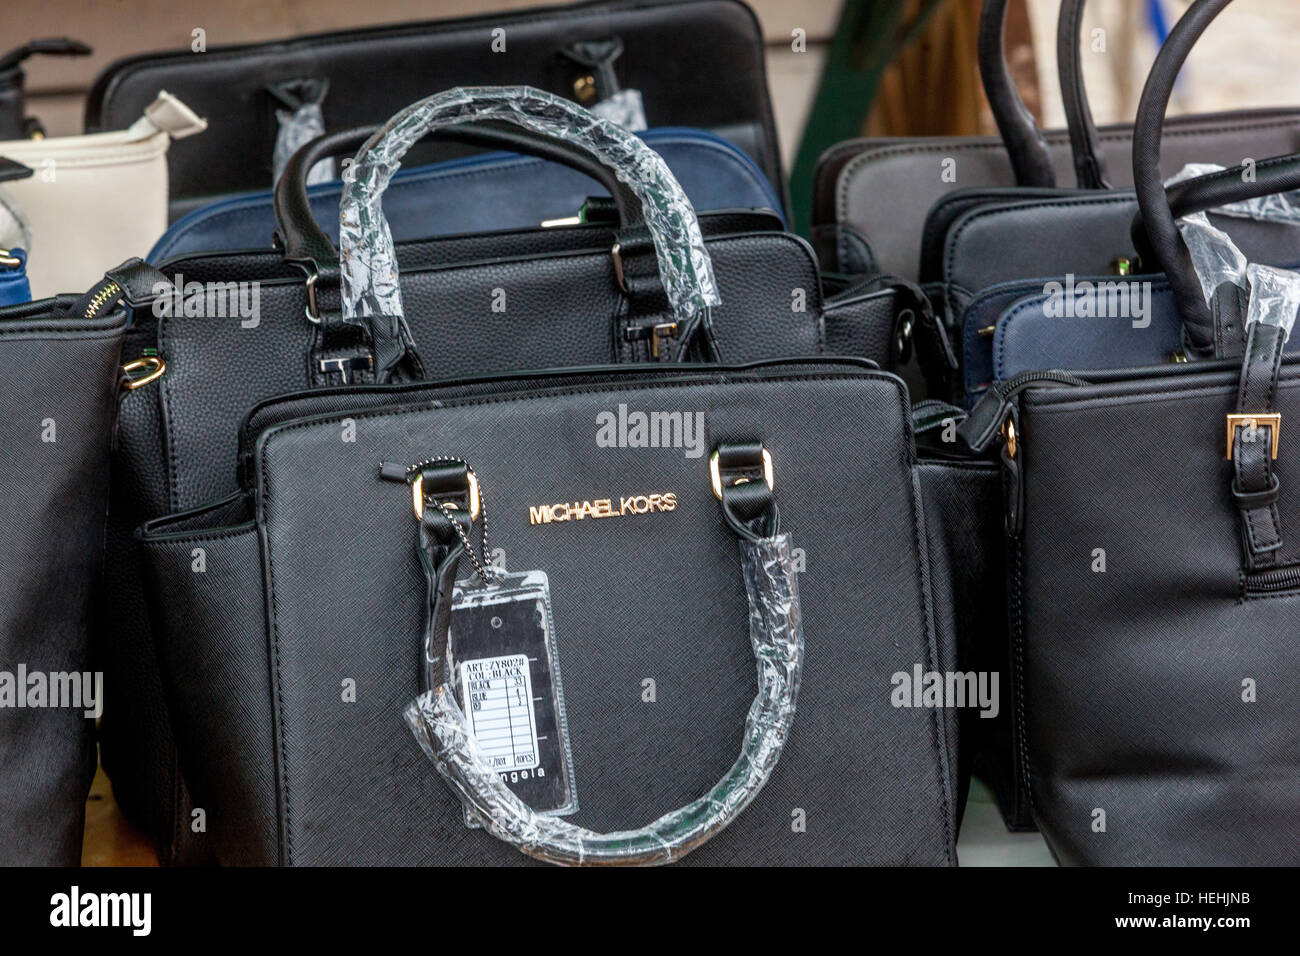 Verkauf von gefälschten Handtaschen bekannte Marke Michael Kors, Markt,  Holesovice, Prag, Tschechische Republik Stockfotografie - Alamy